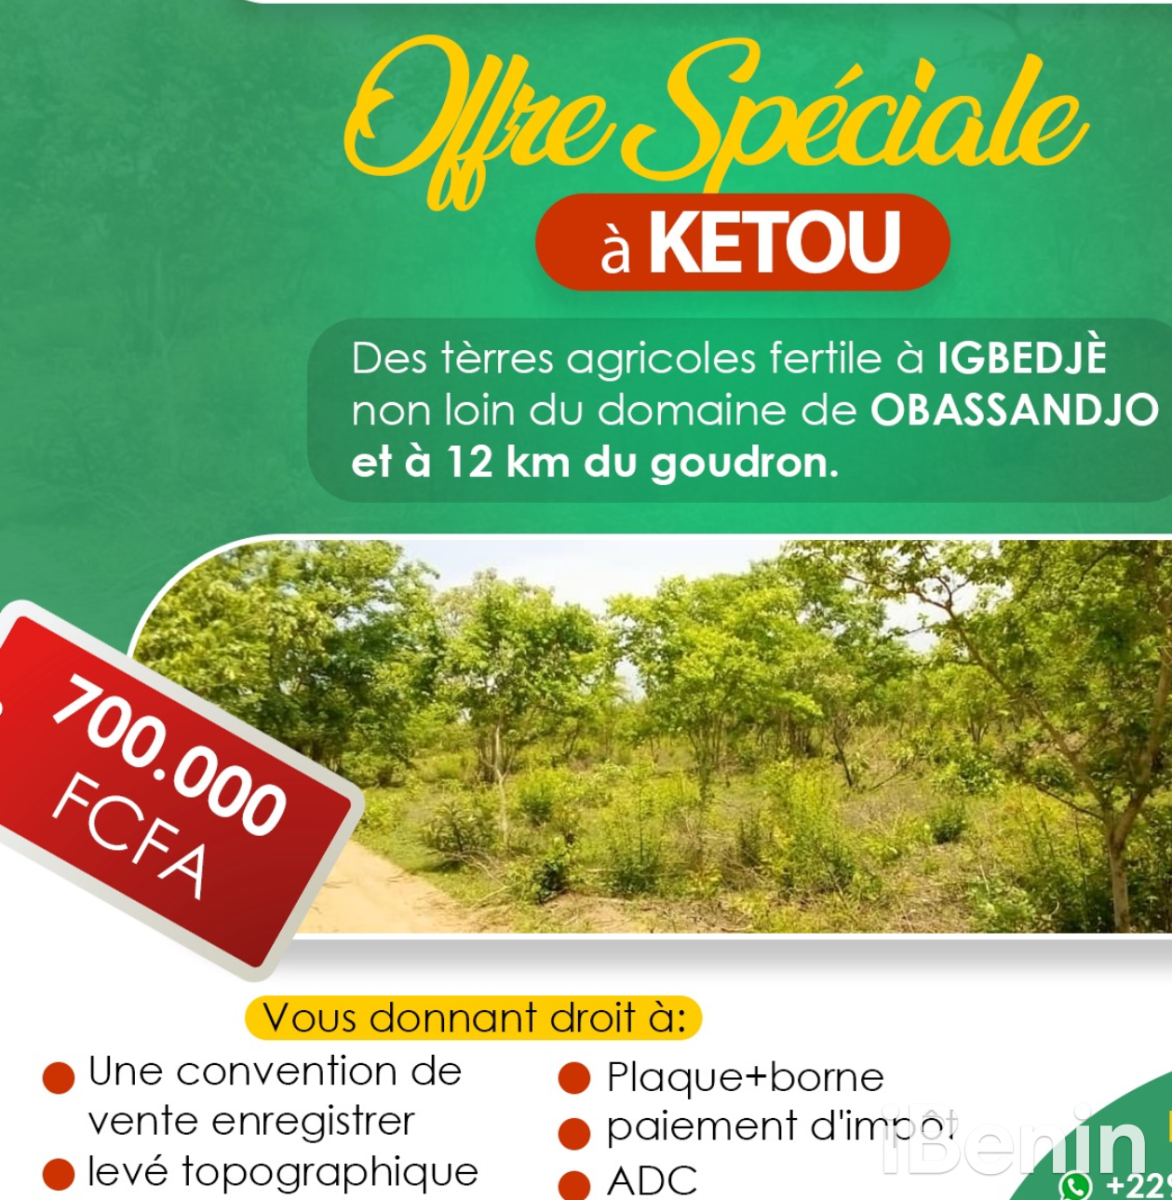 hectares-a-ketou-big-0